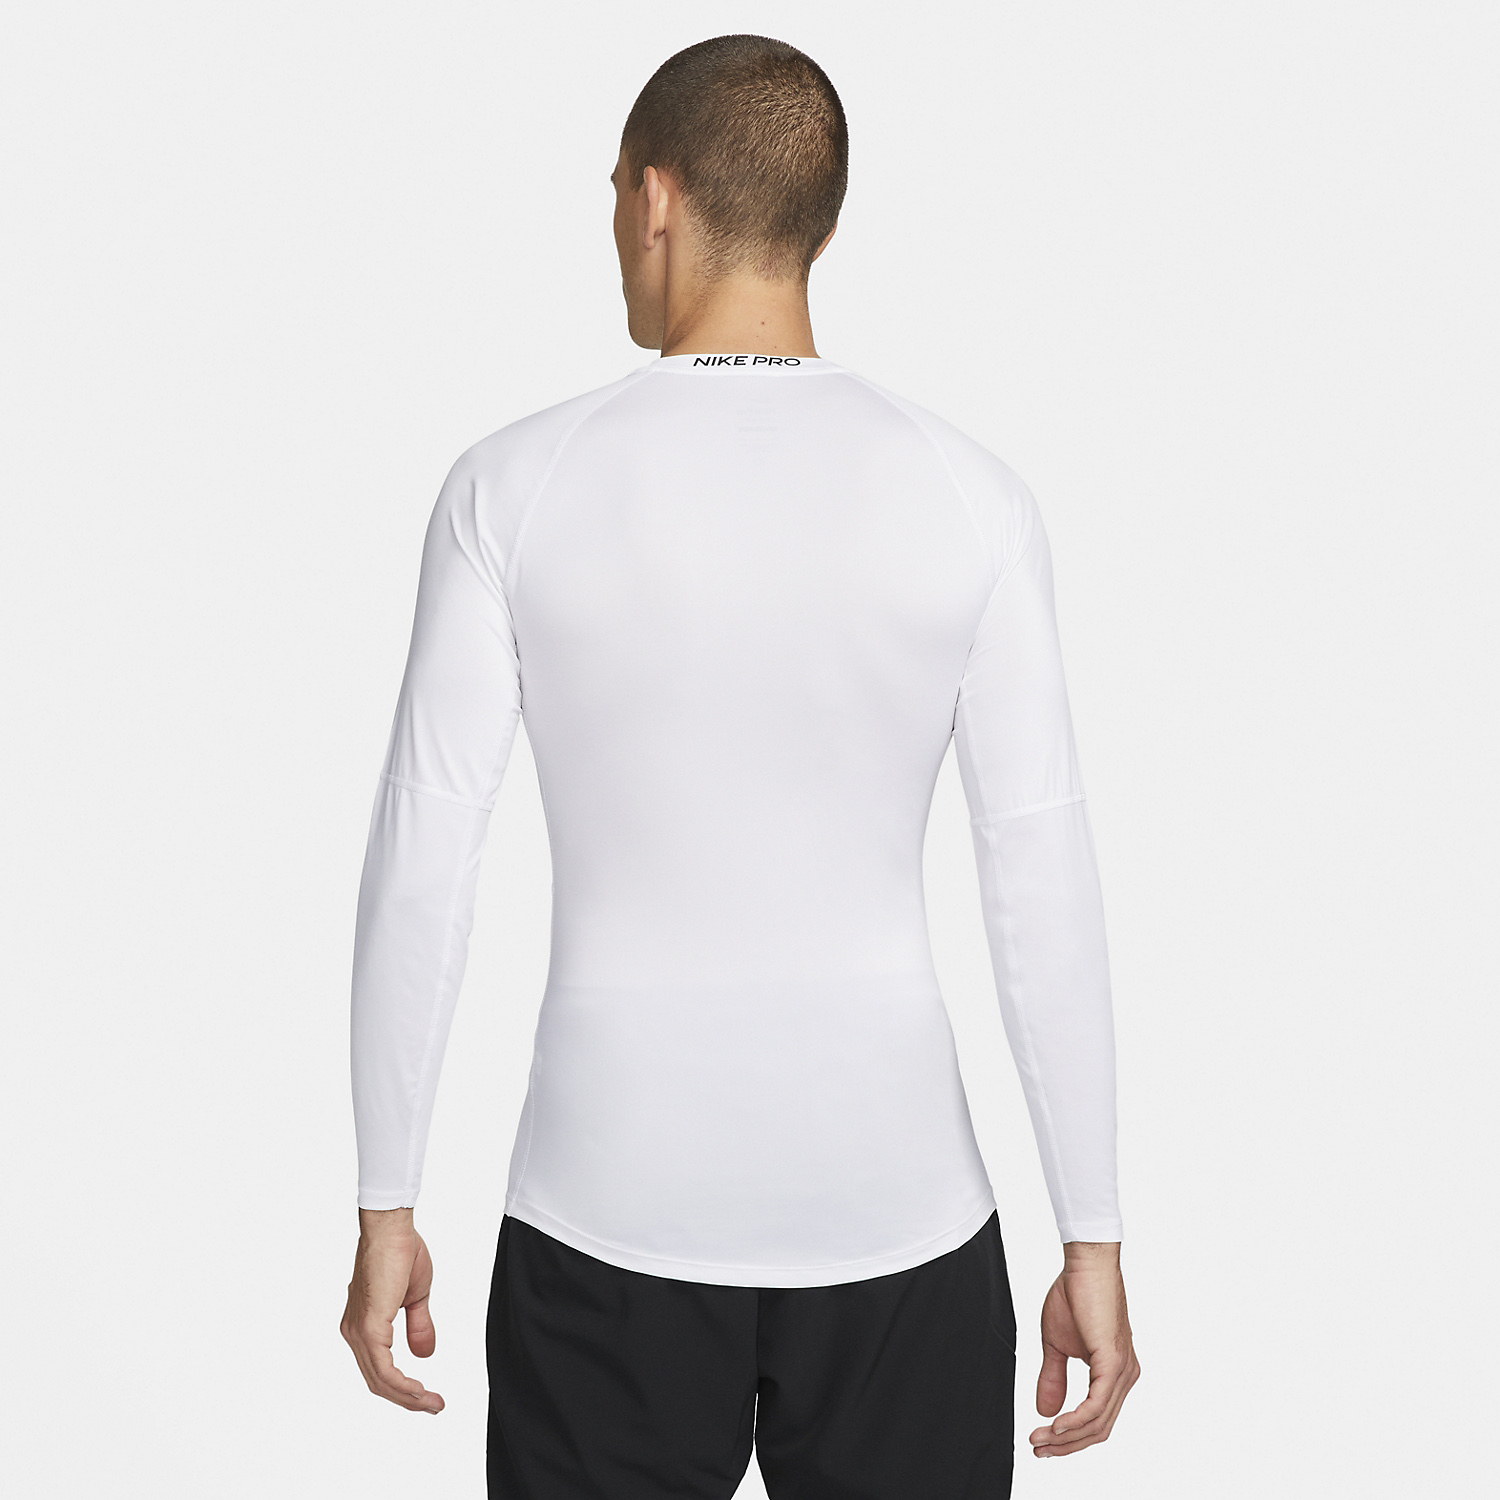 Nike Dri-FIT Pro Men's Tennis Shirt - White/Black